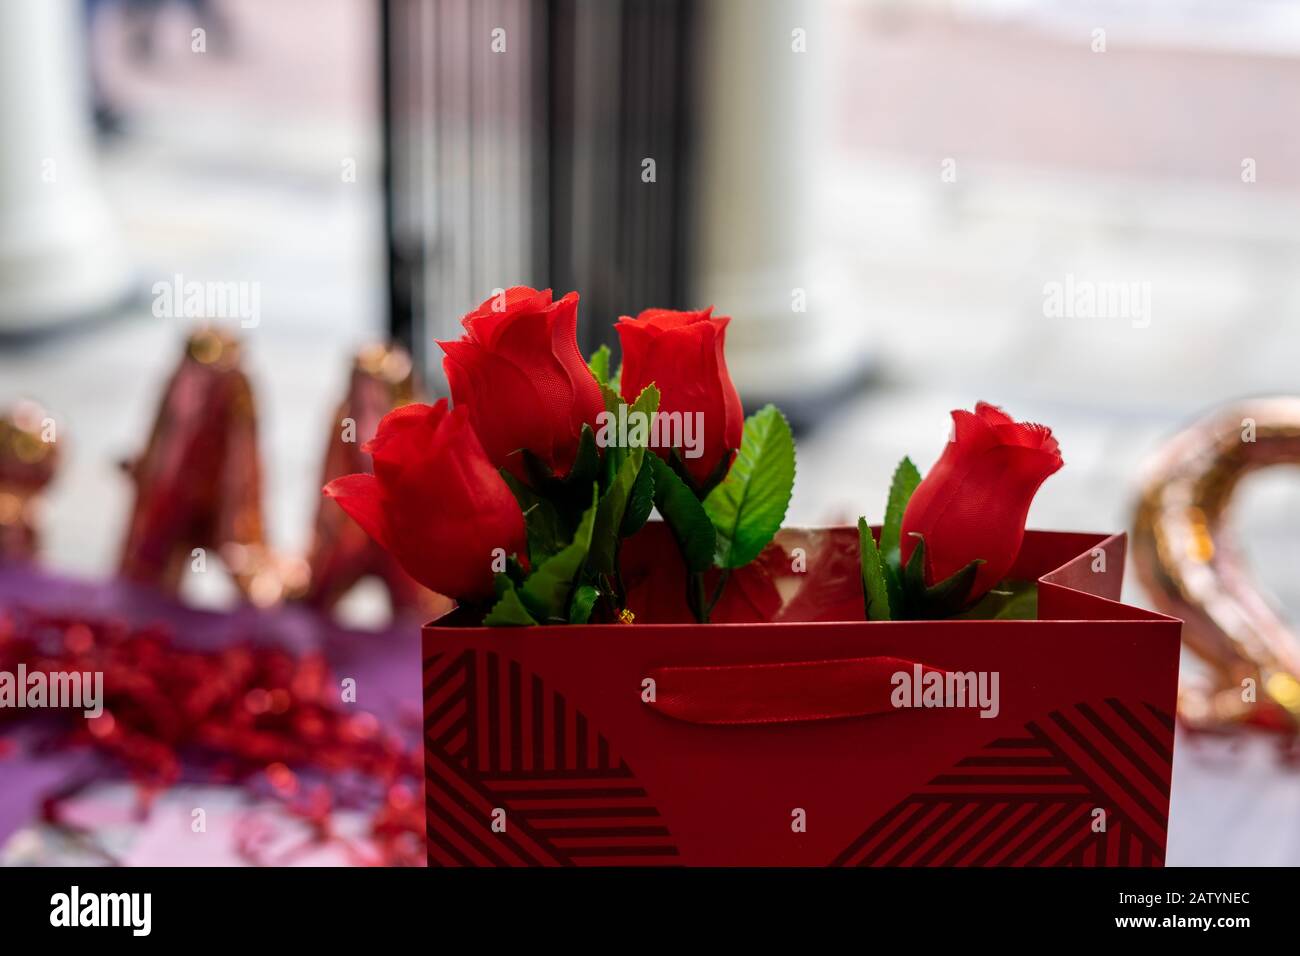 Rosas rojas en una bolsa roja lista para los días de San Valentín Foto de stock